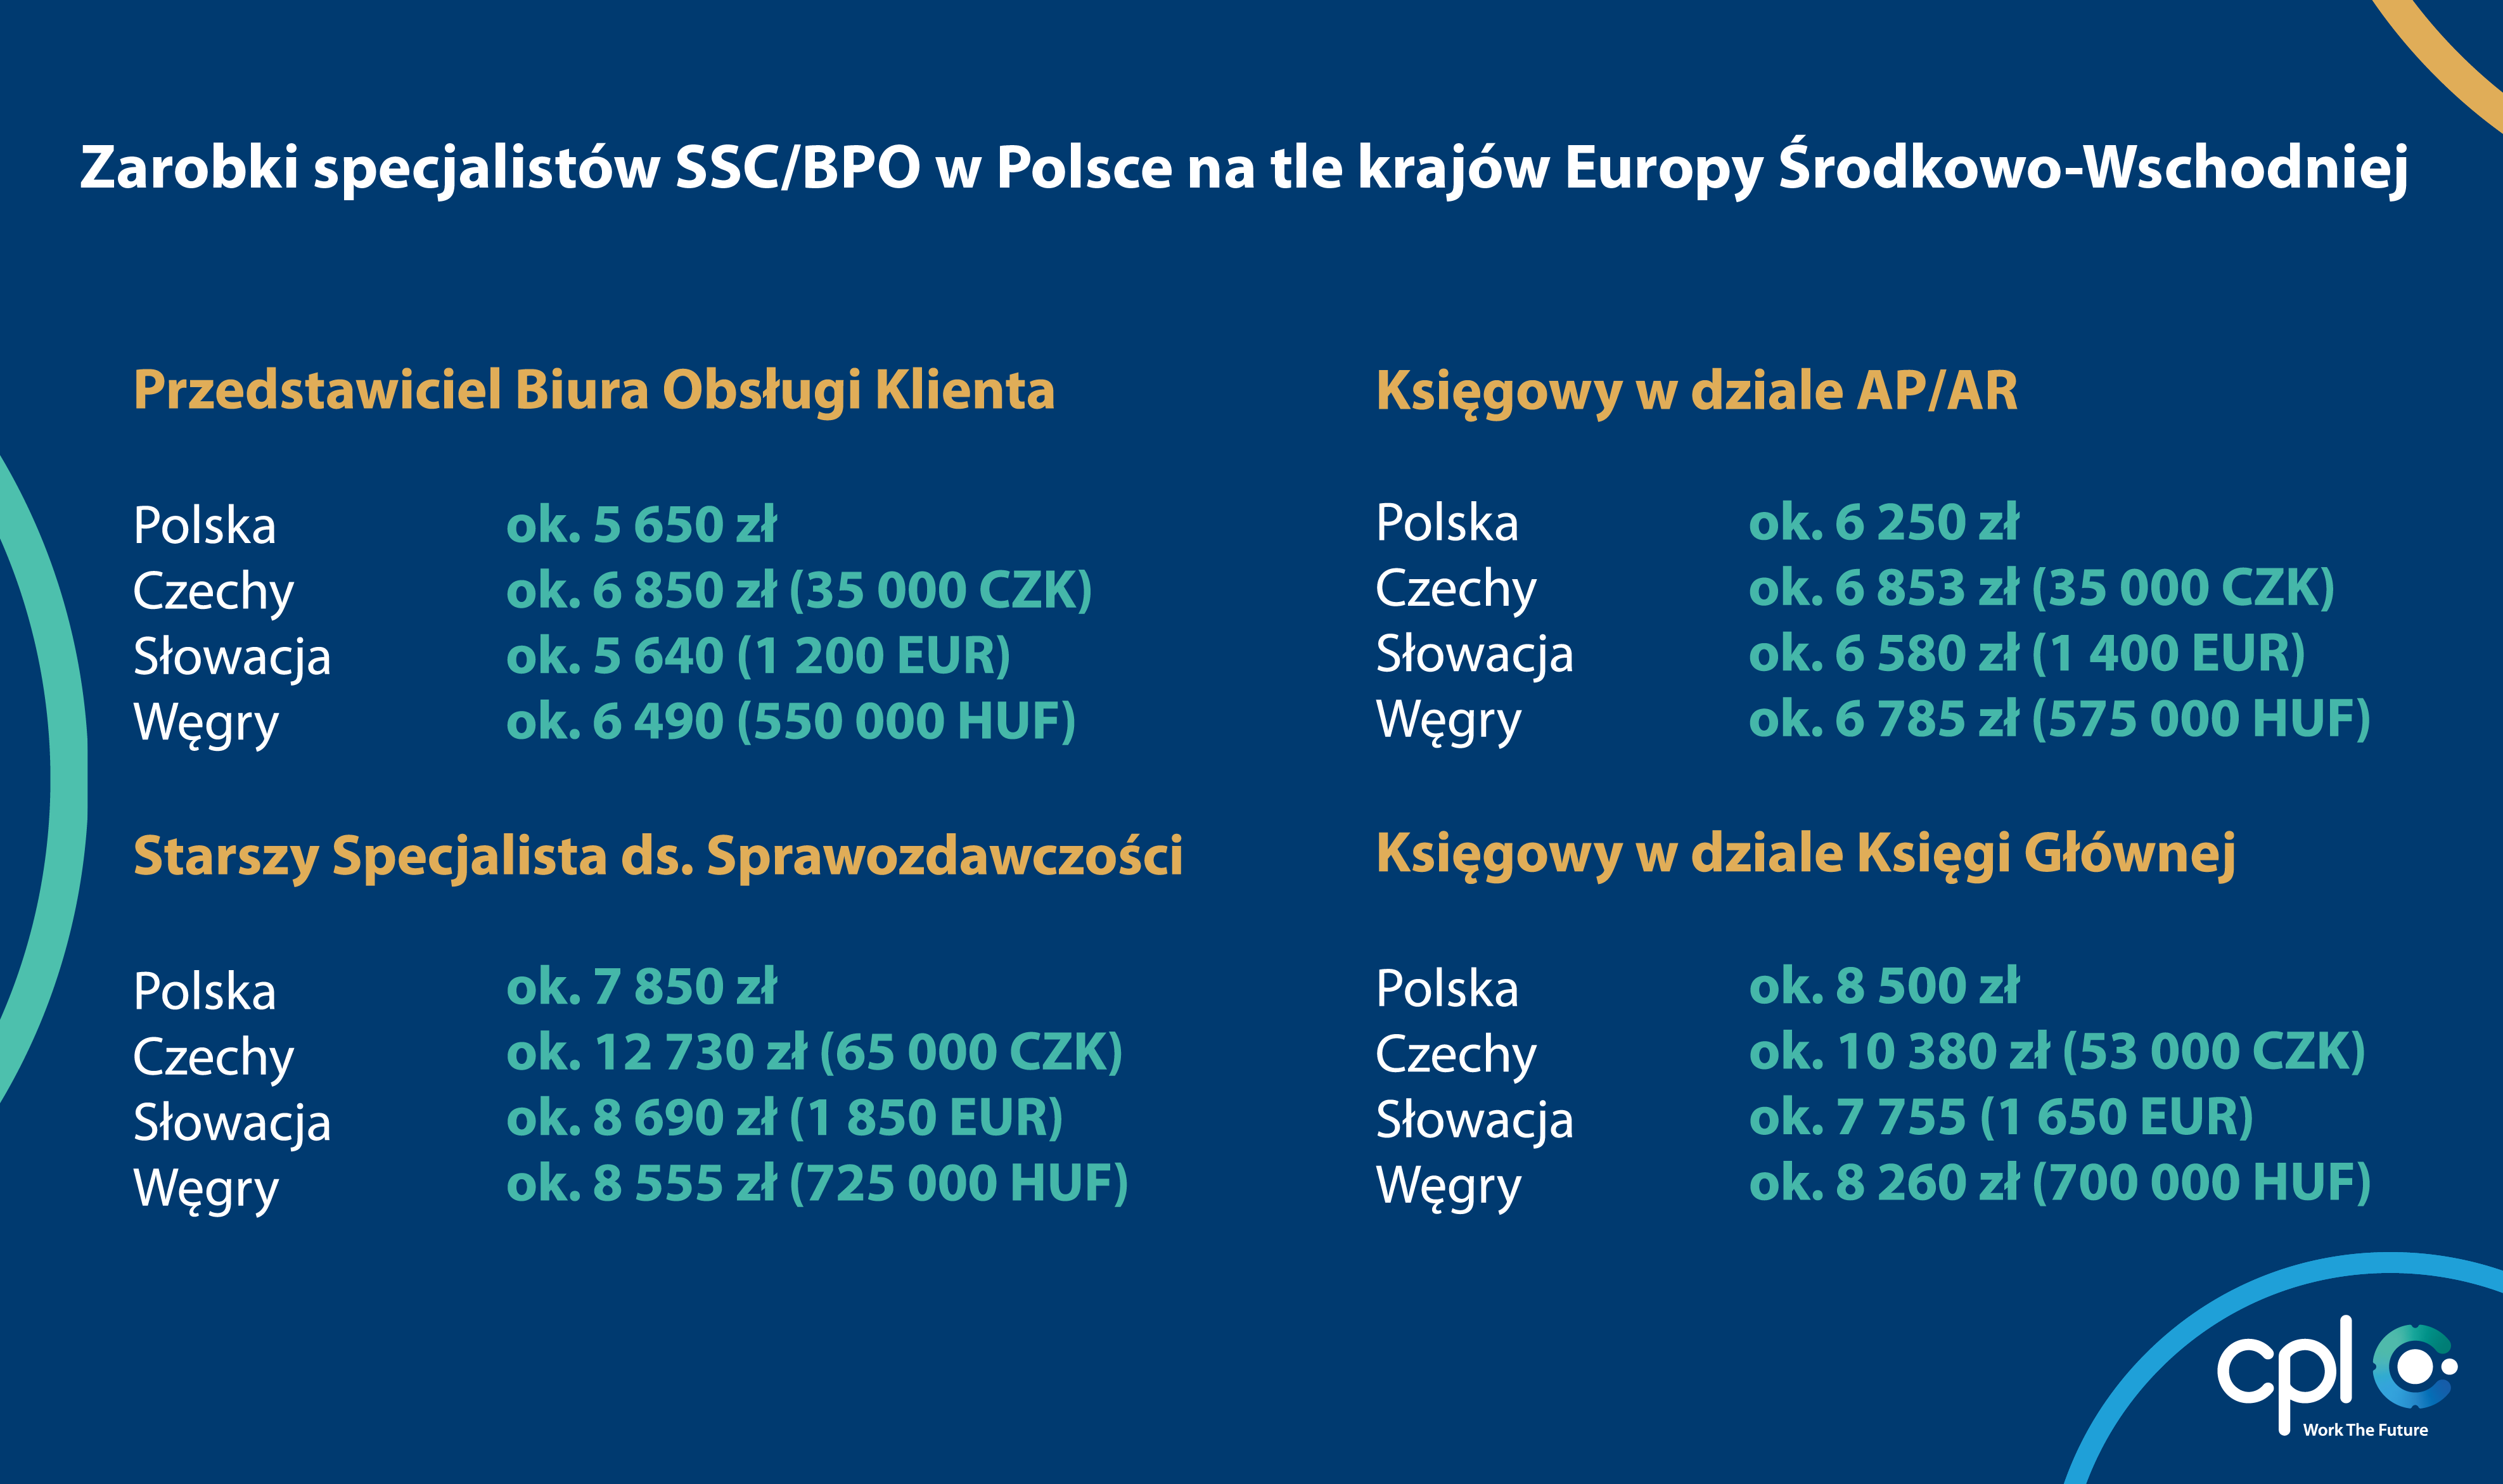 Zarobki specjalistów SSC/BPO w Polsce na tle krajów Europy Środkowo-Wschodniej (źródło: Cpl)